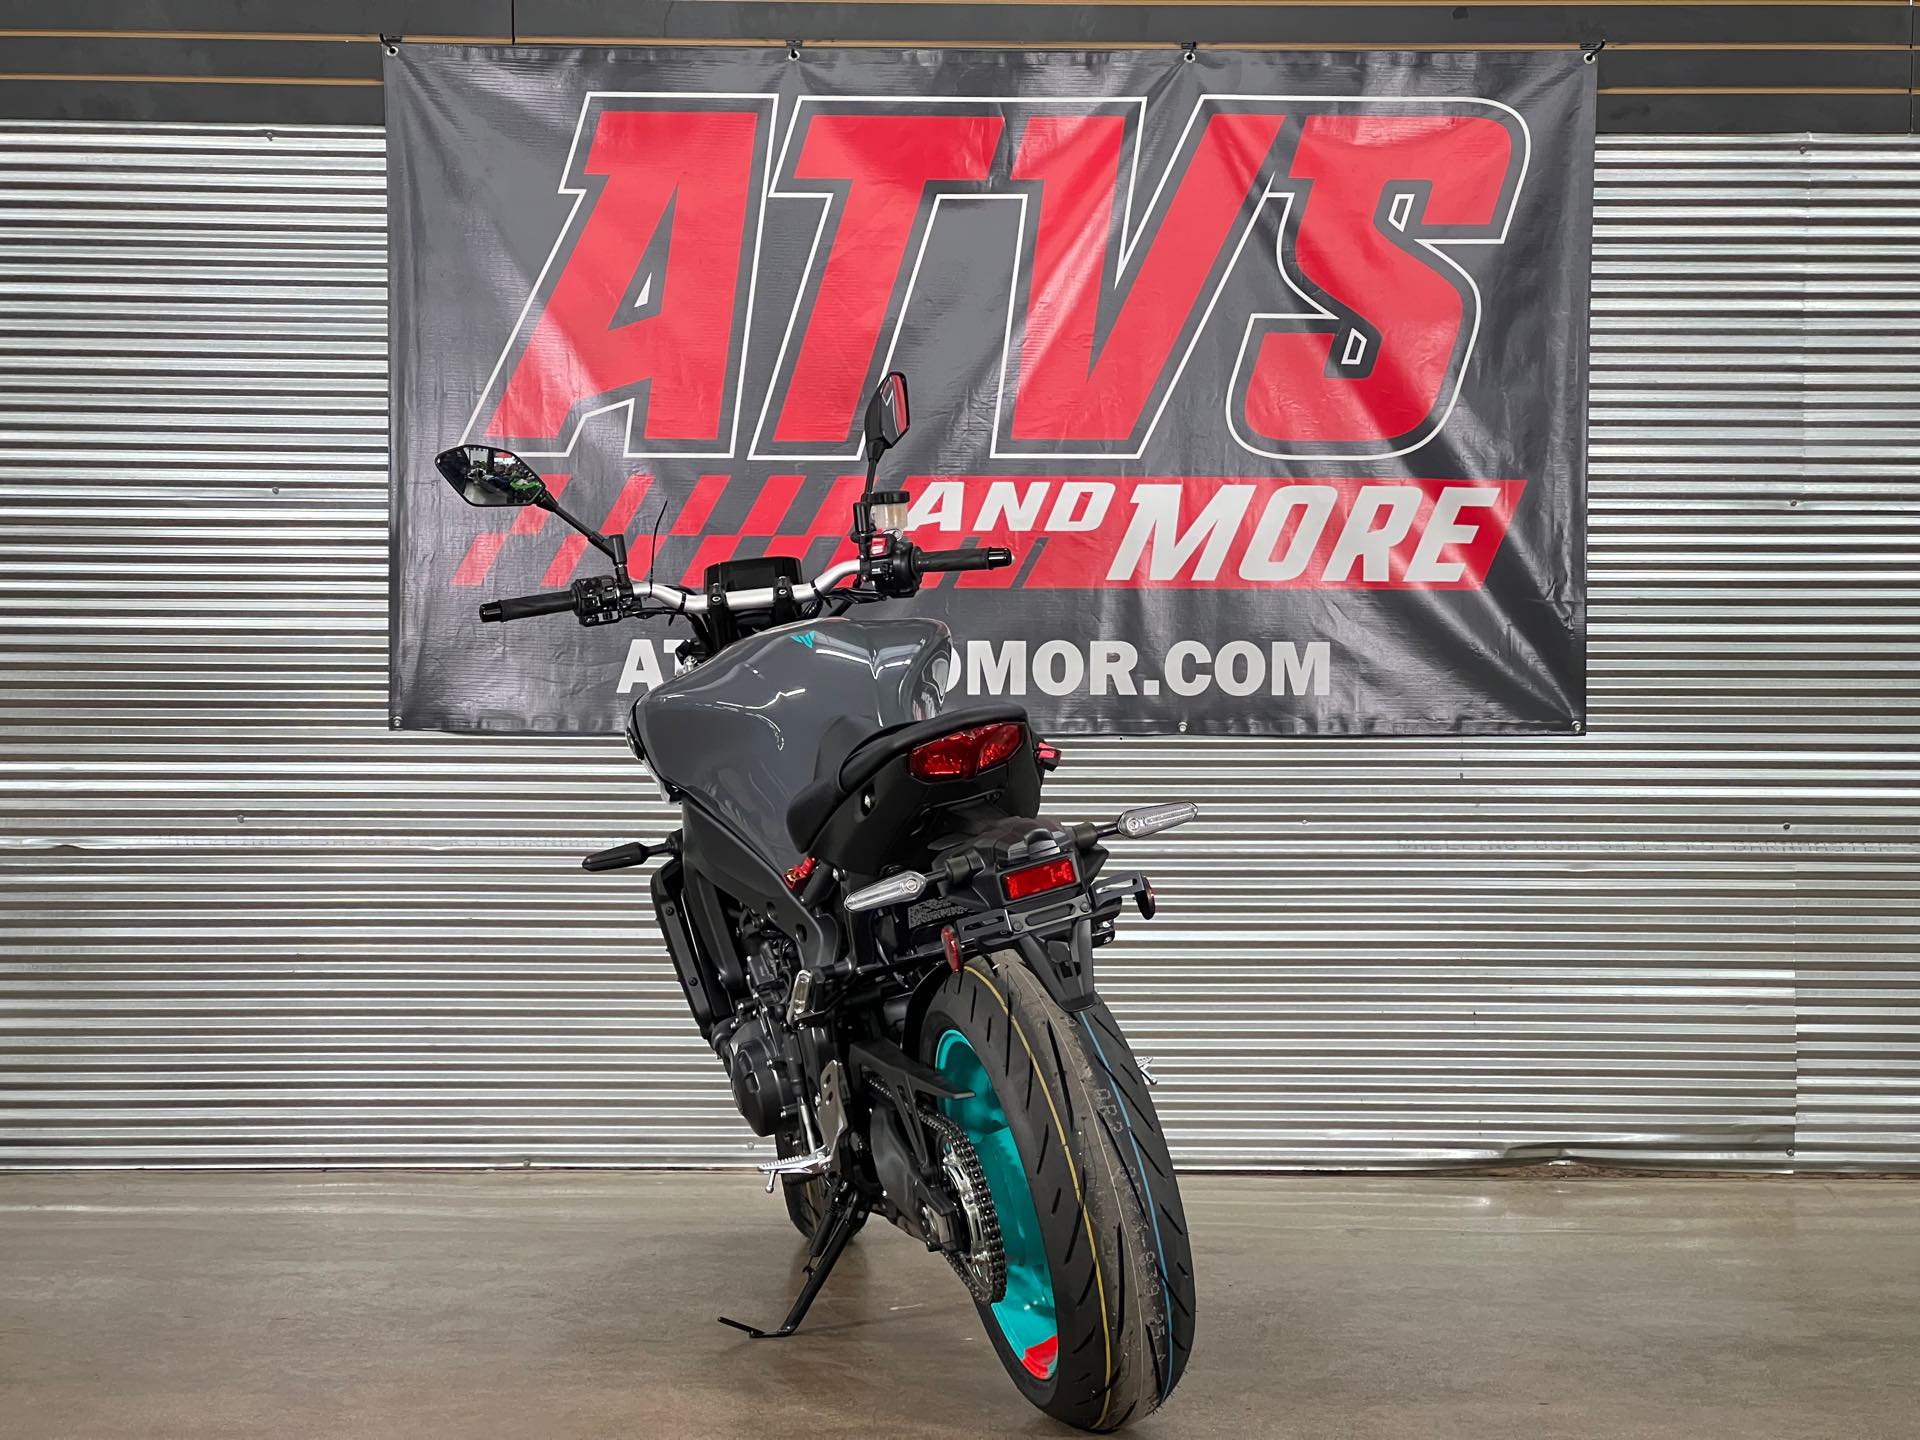 2023 Yamaha MT 09 at ATVs and More